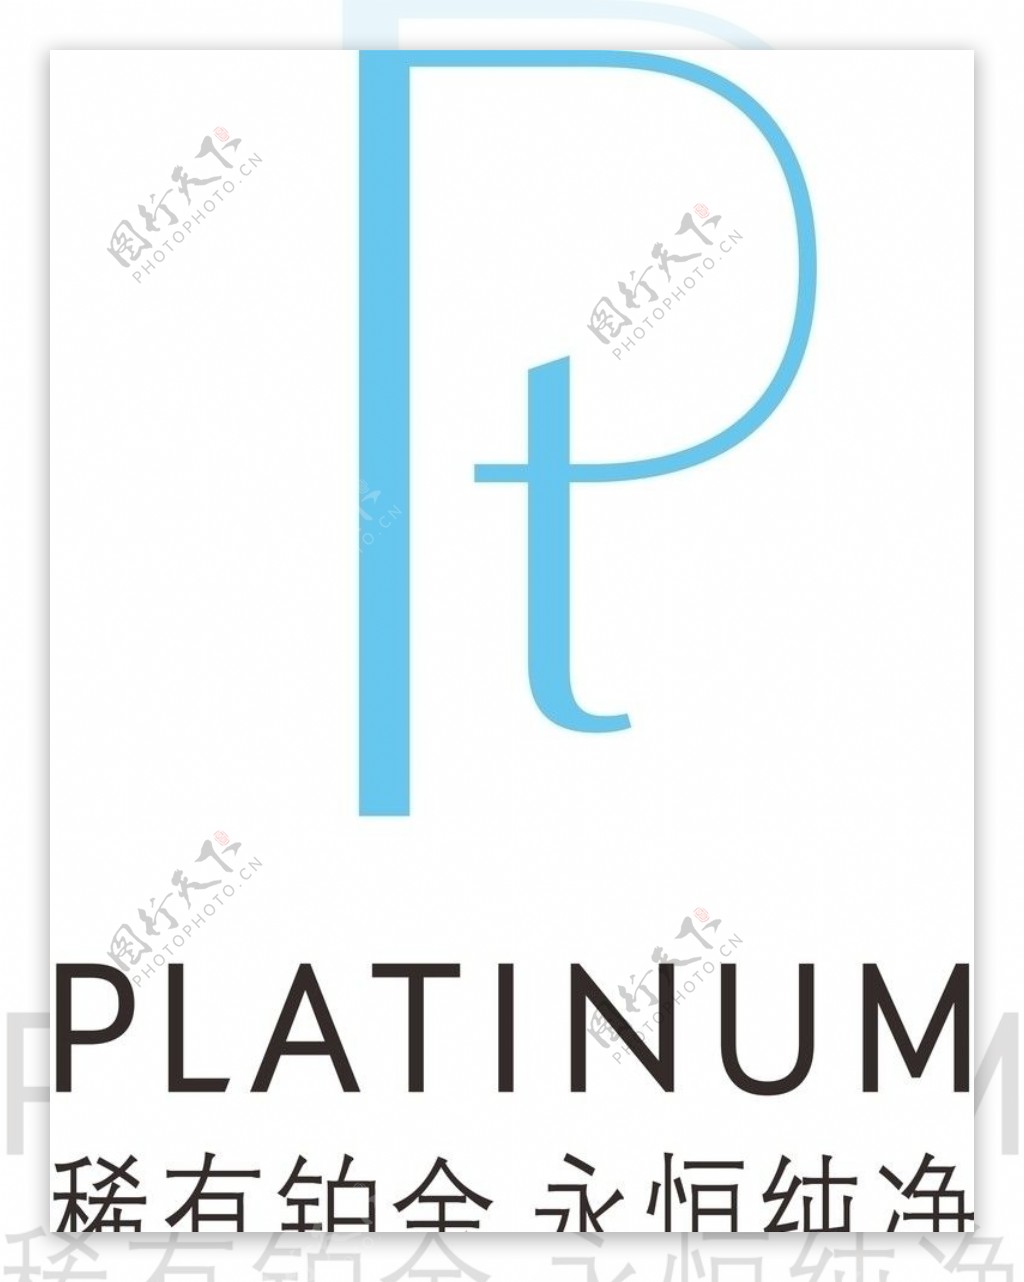 platinum国际铂金协会标志图片